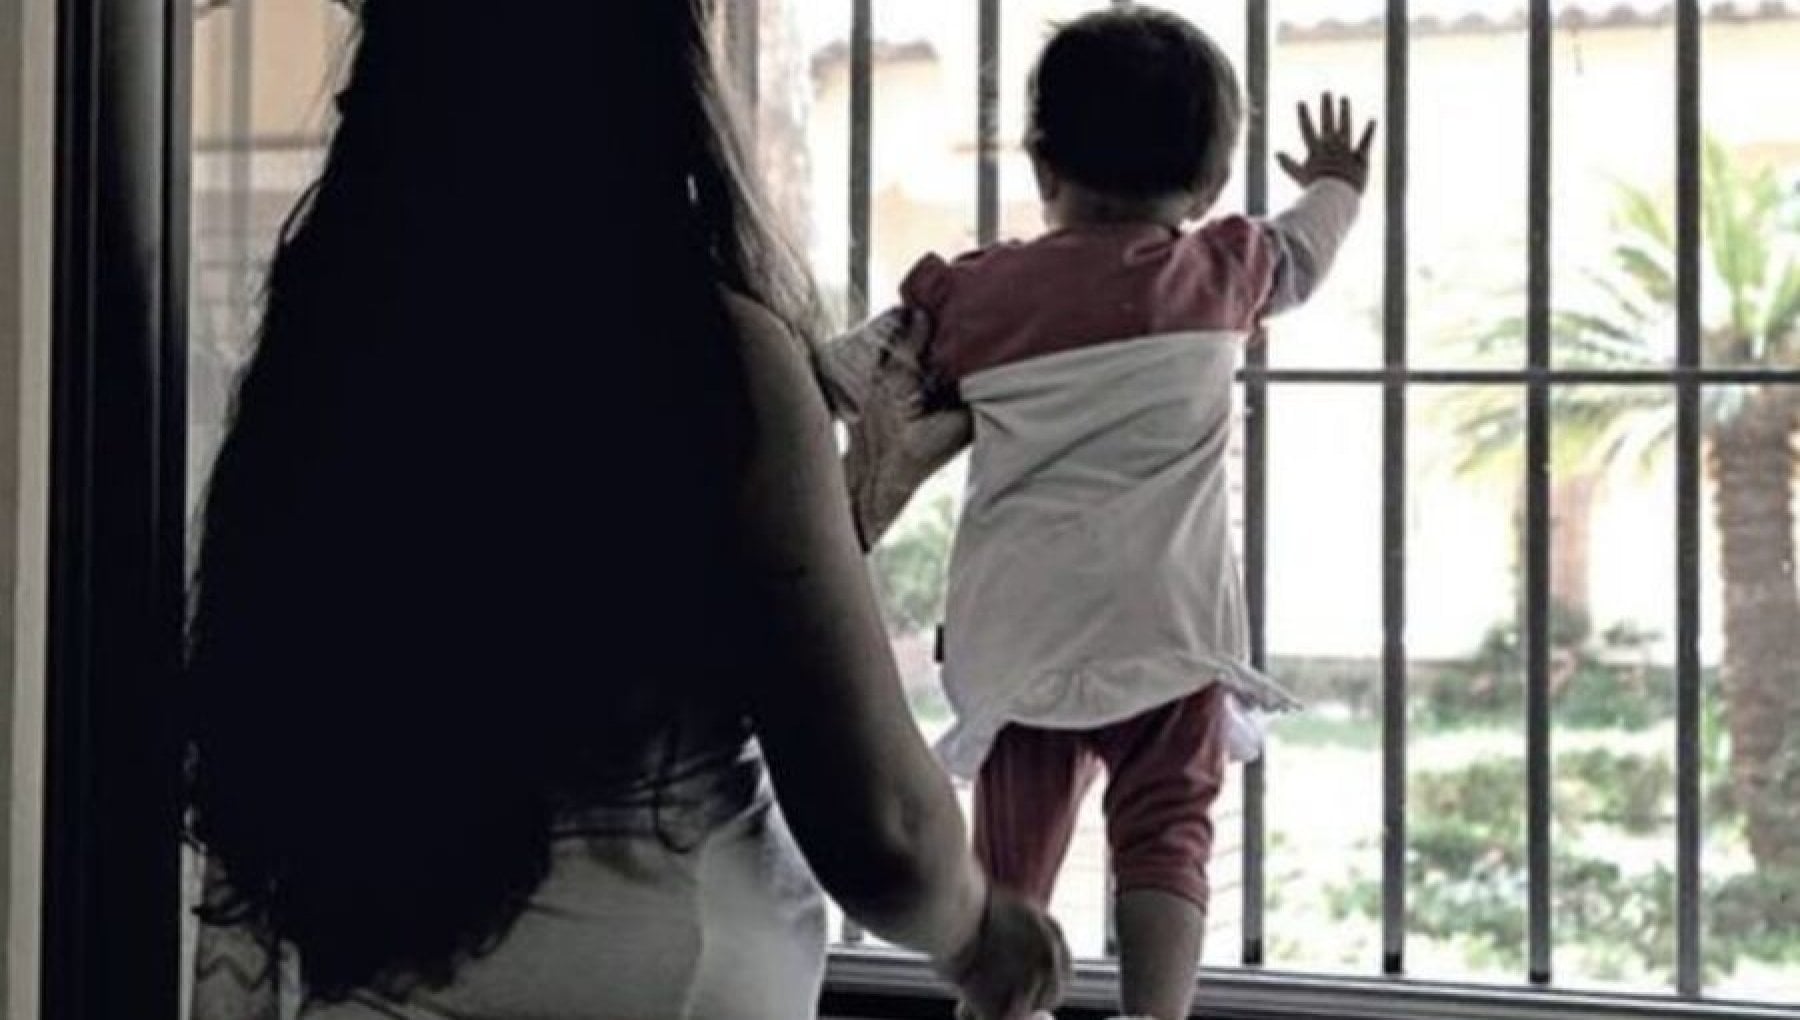 In carcere c'è un bambino di un mese, l'appello di Avs al governo Meloni: "Nordio deve intervenire"